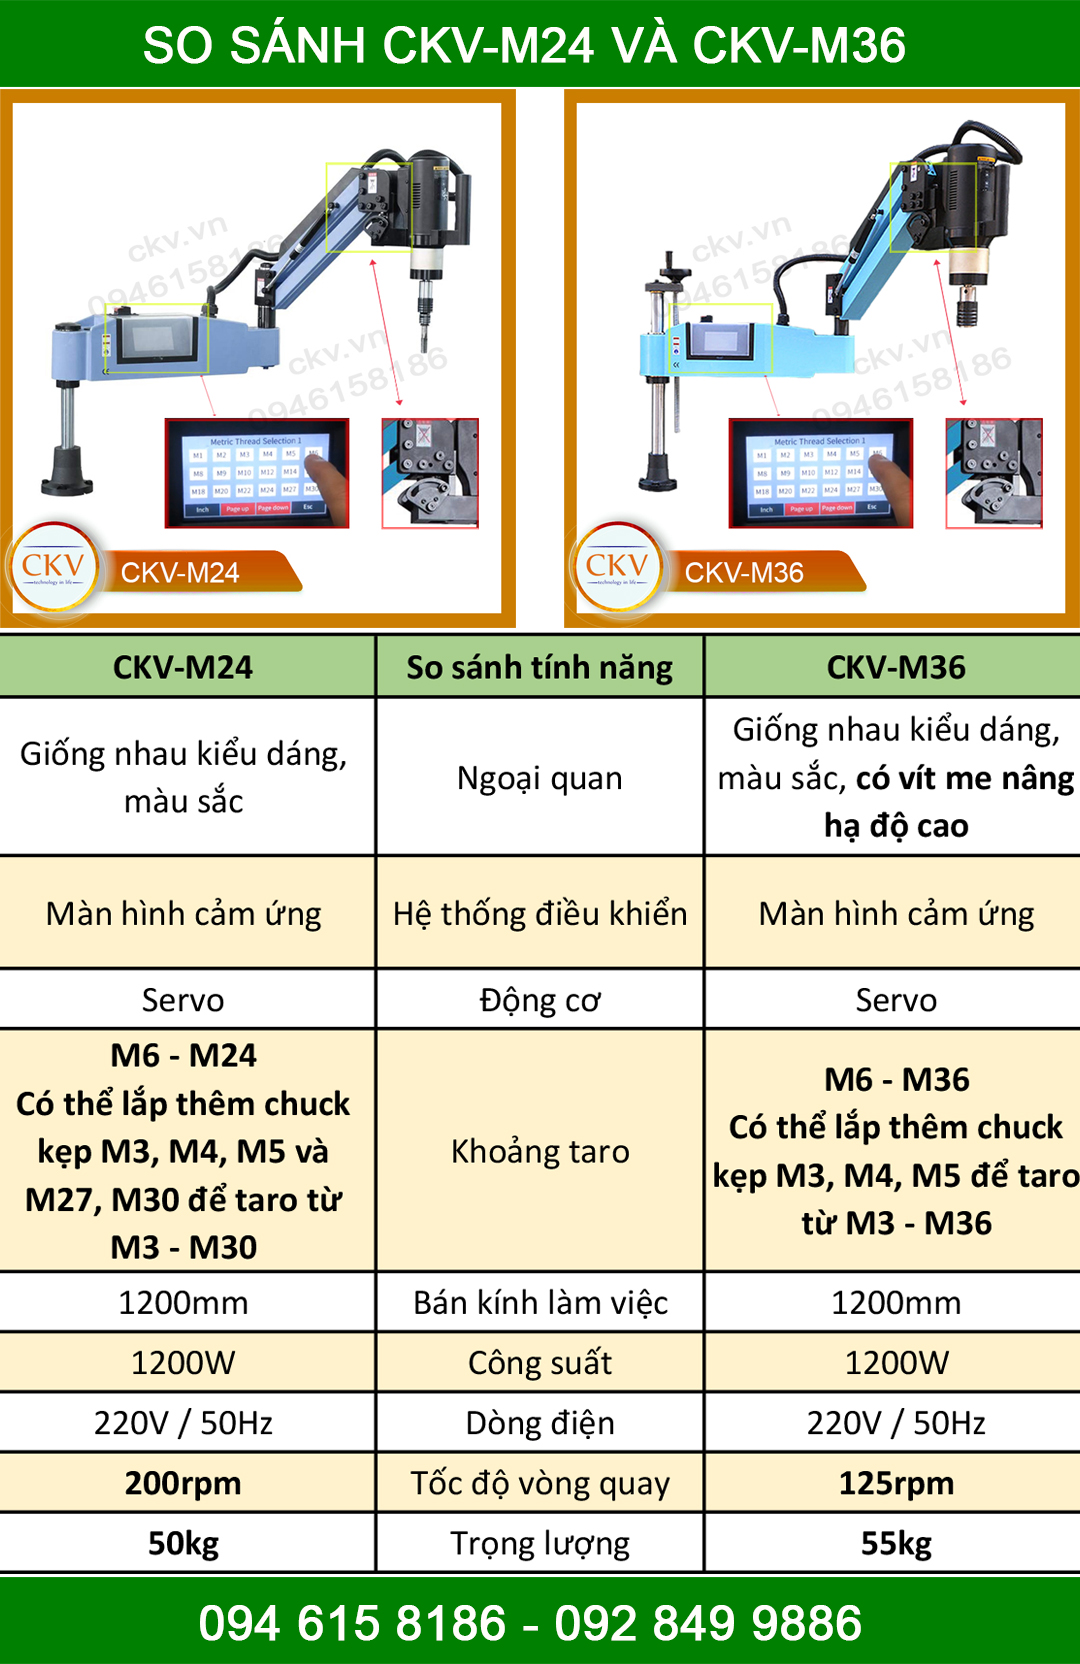 So sánh máy taro điện CKV-M24 và CKV-M36